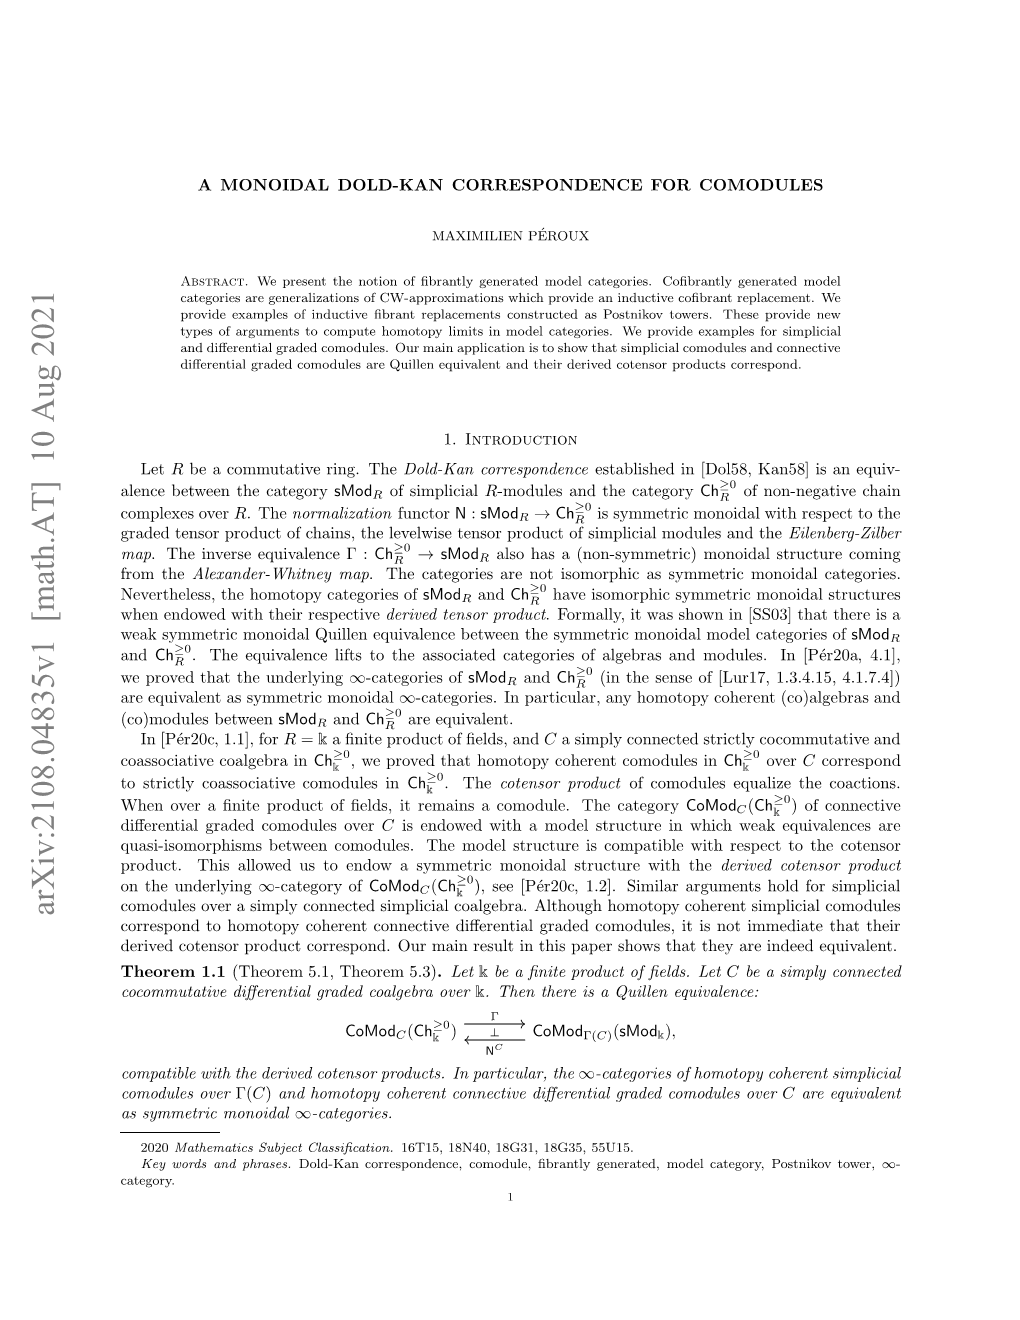 A Monoidal Dold-Kan Correspondence for Comodules